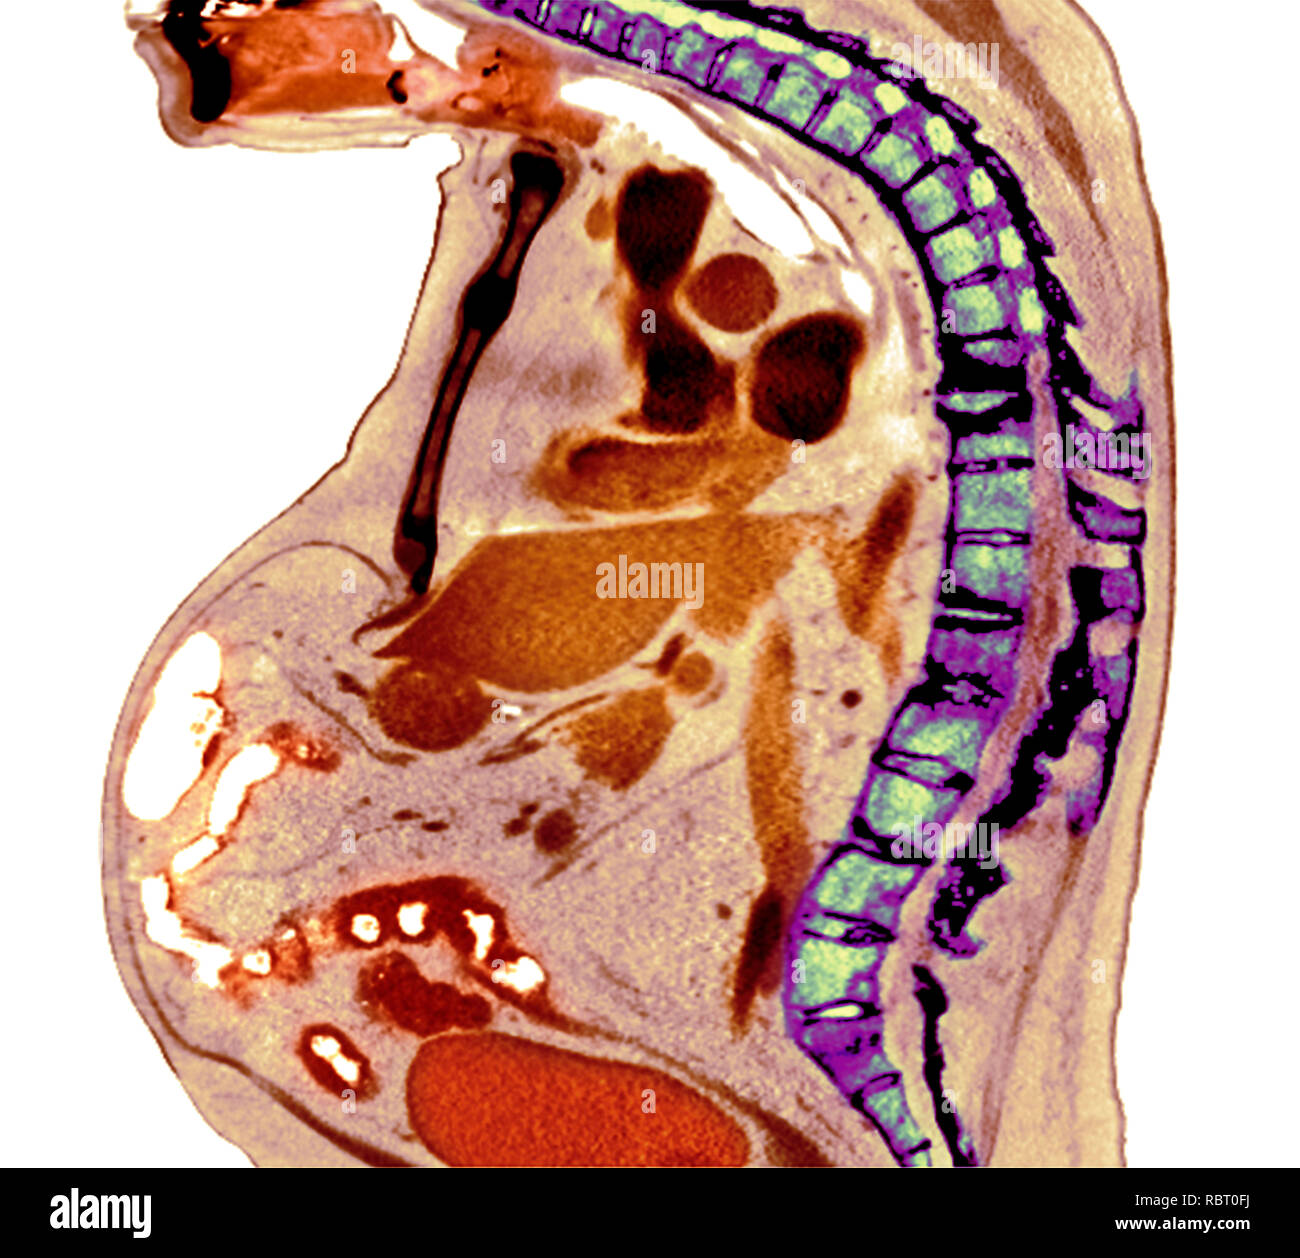 Colonne vertébrale dans la spondylarthrite ankylosante. X-ray de couleur d'une section à travers la colonne thoracique d'un 74-year-old male patient avec la spondylarthrite ankylosante, sho Banque D'Images